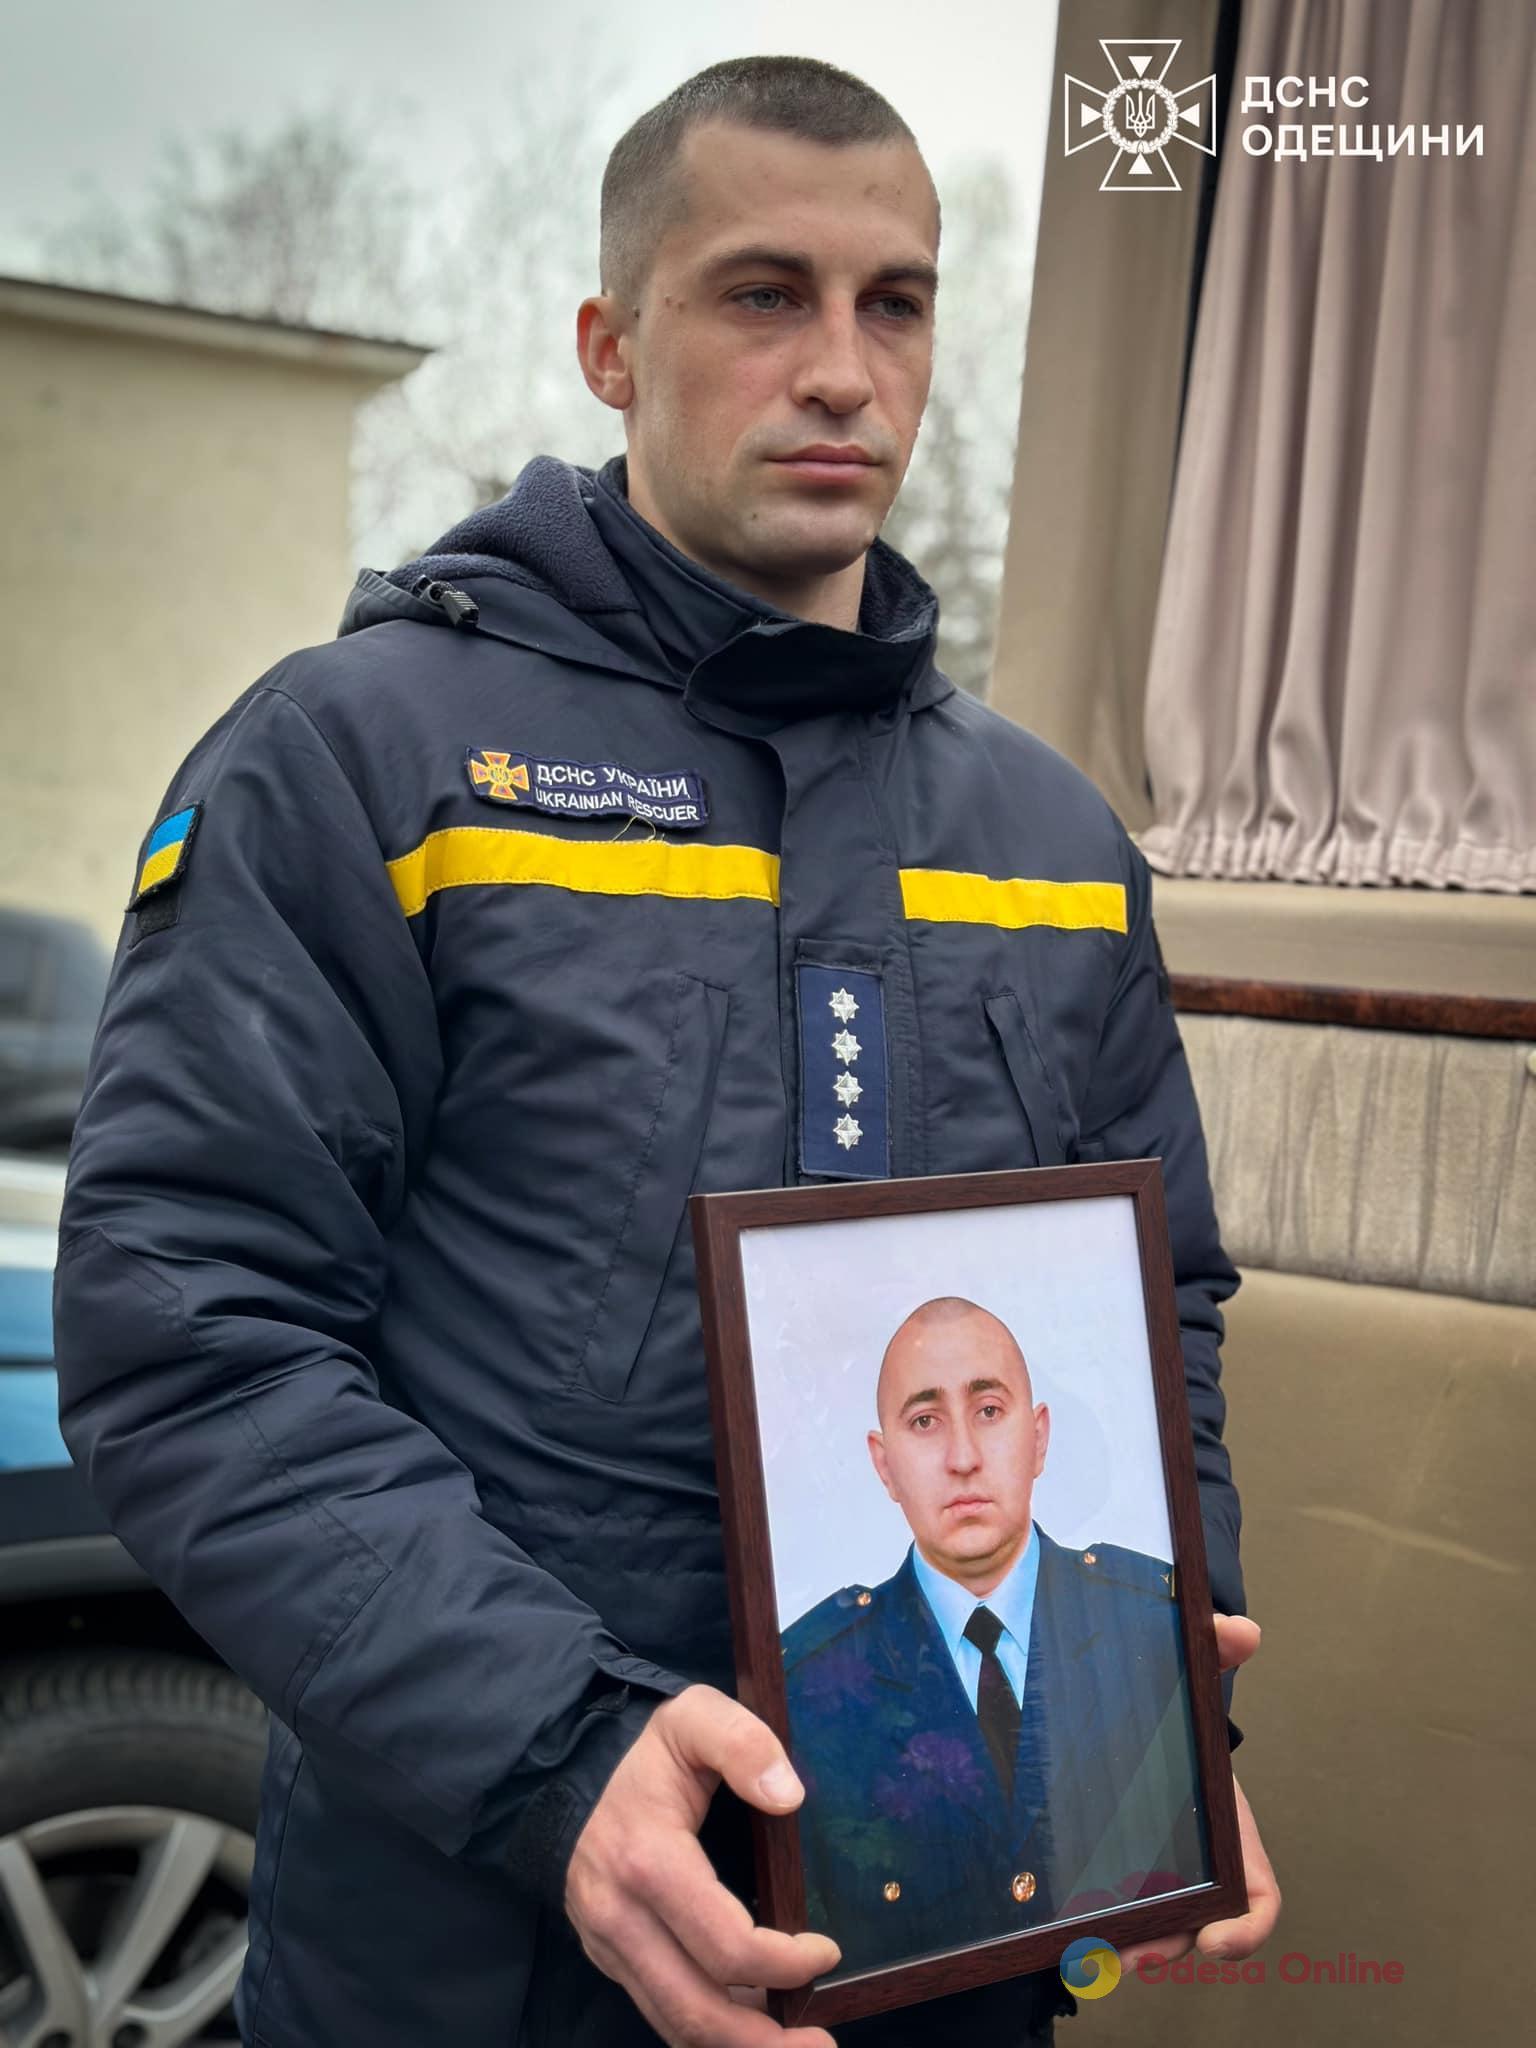 «Мы потеряли частичку сердца», — в последний путь провели спасателя Дениса Колесникова, который погиб во время баллистической атаки по Одессе